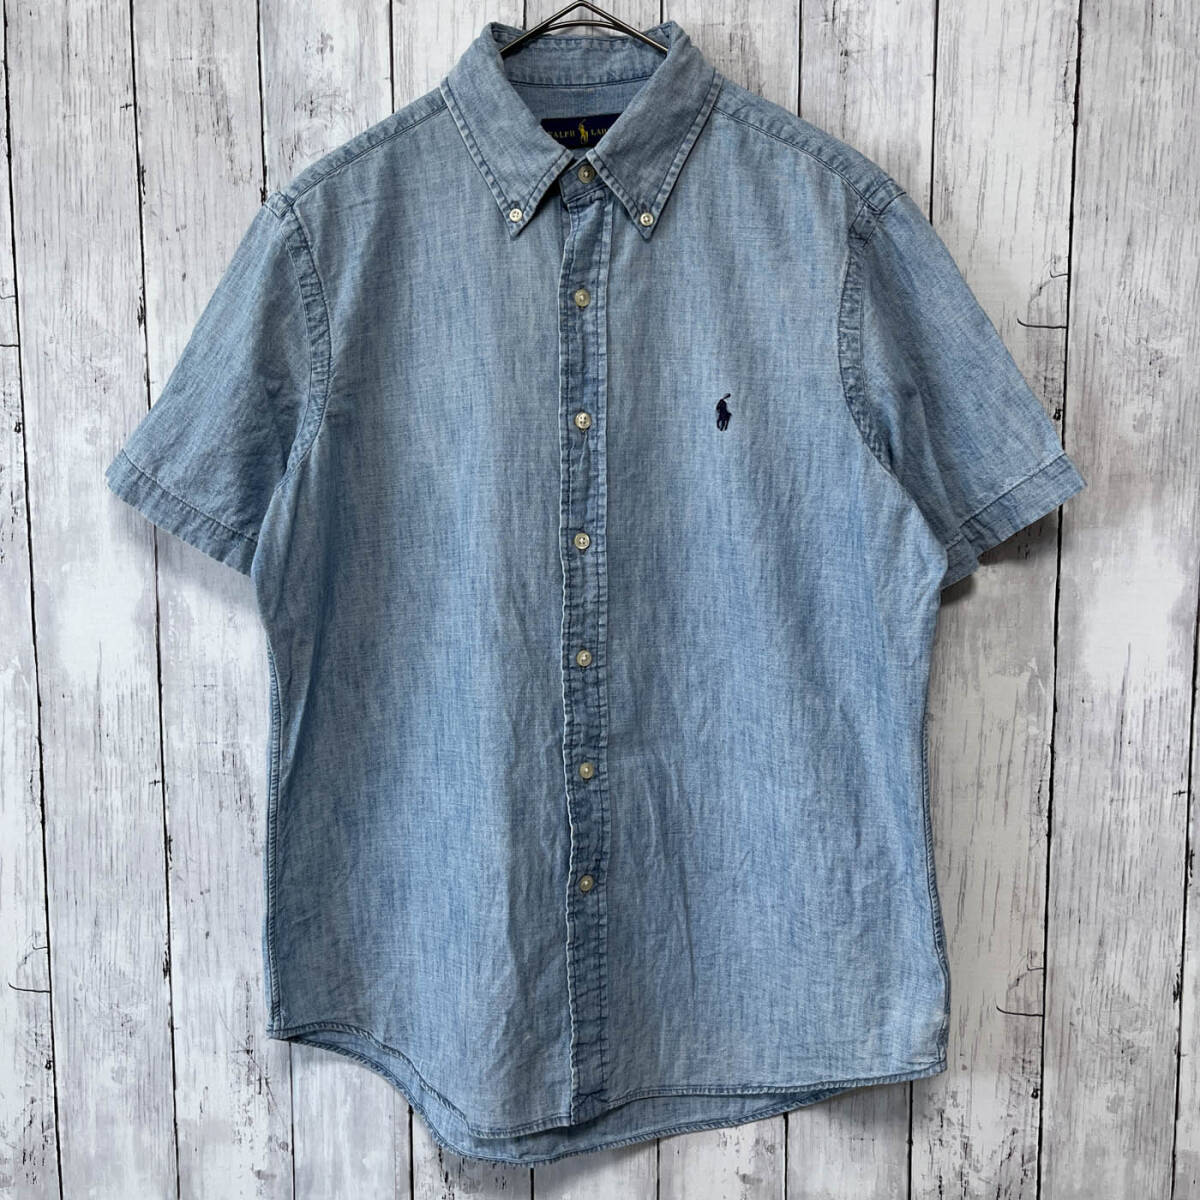  Ralph Lauren Ralph Lauren Denim рубашка рубашка с коротким рукавом мужской one отметка хлопок 100% M размер 5-535